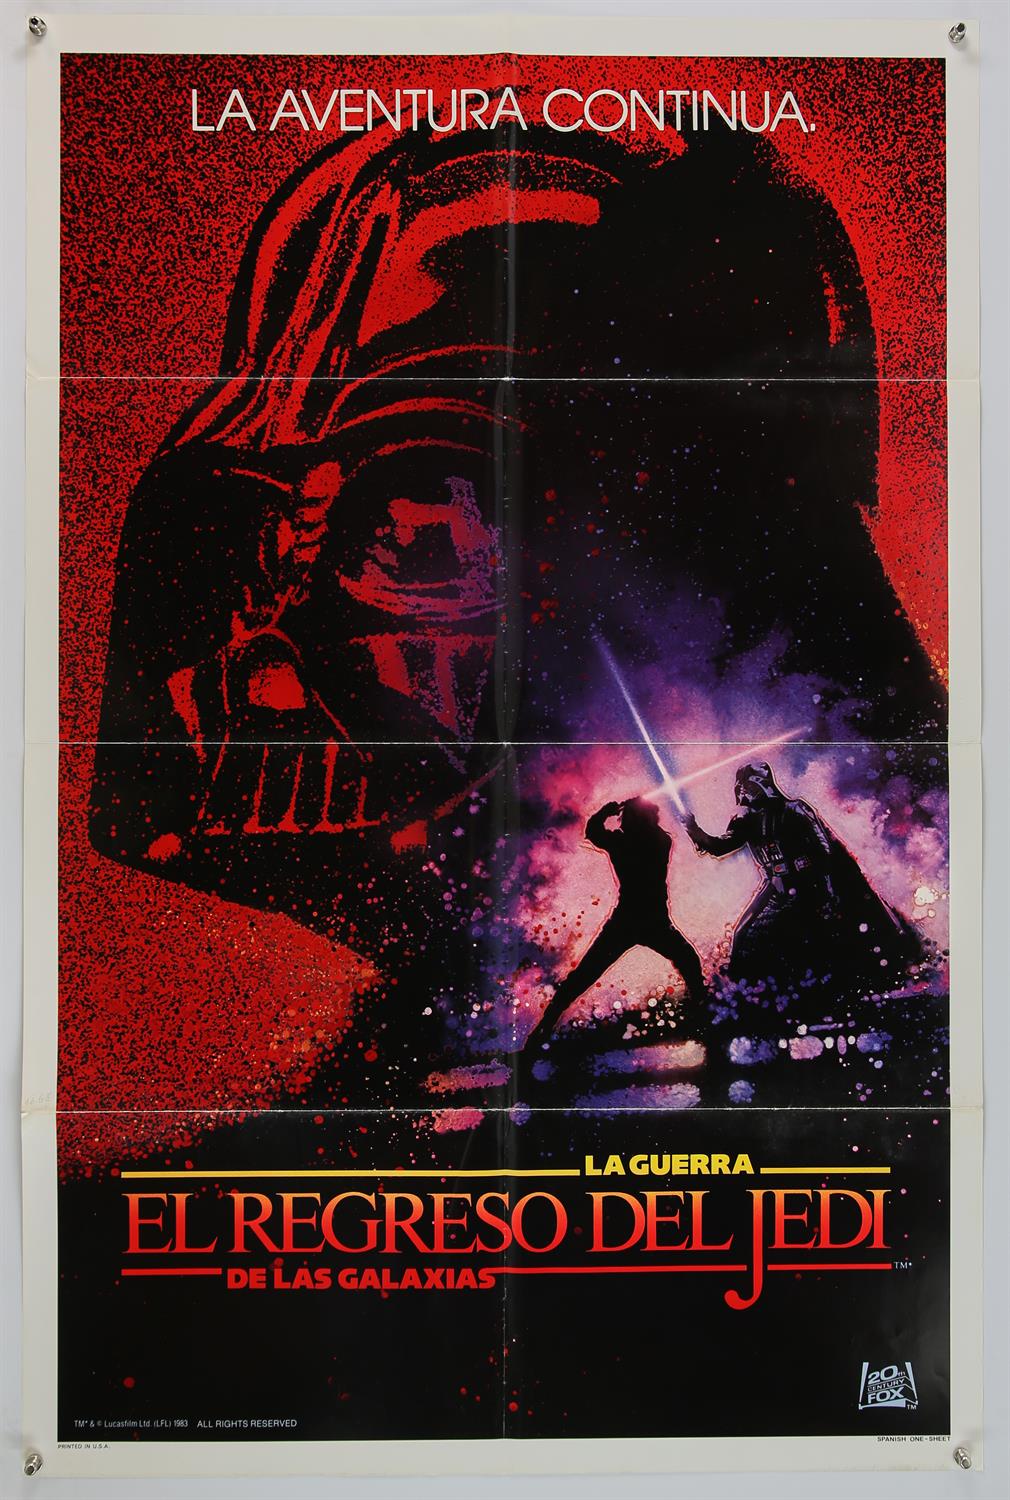 Star Wars Return of the Jedi (1983), Spanish One Sheet, 41 x 27 inches, folded. Drew Struzan